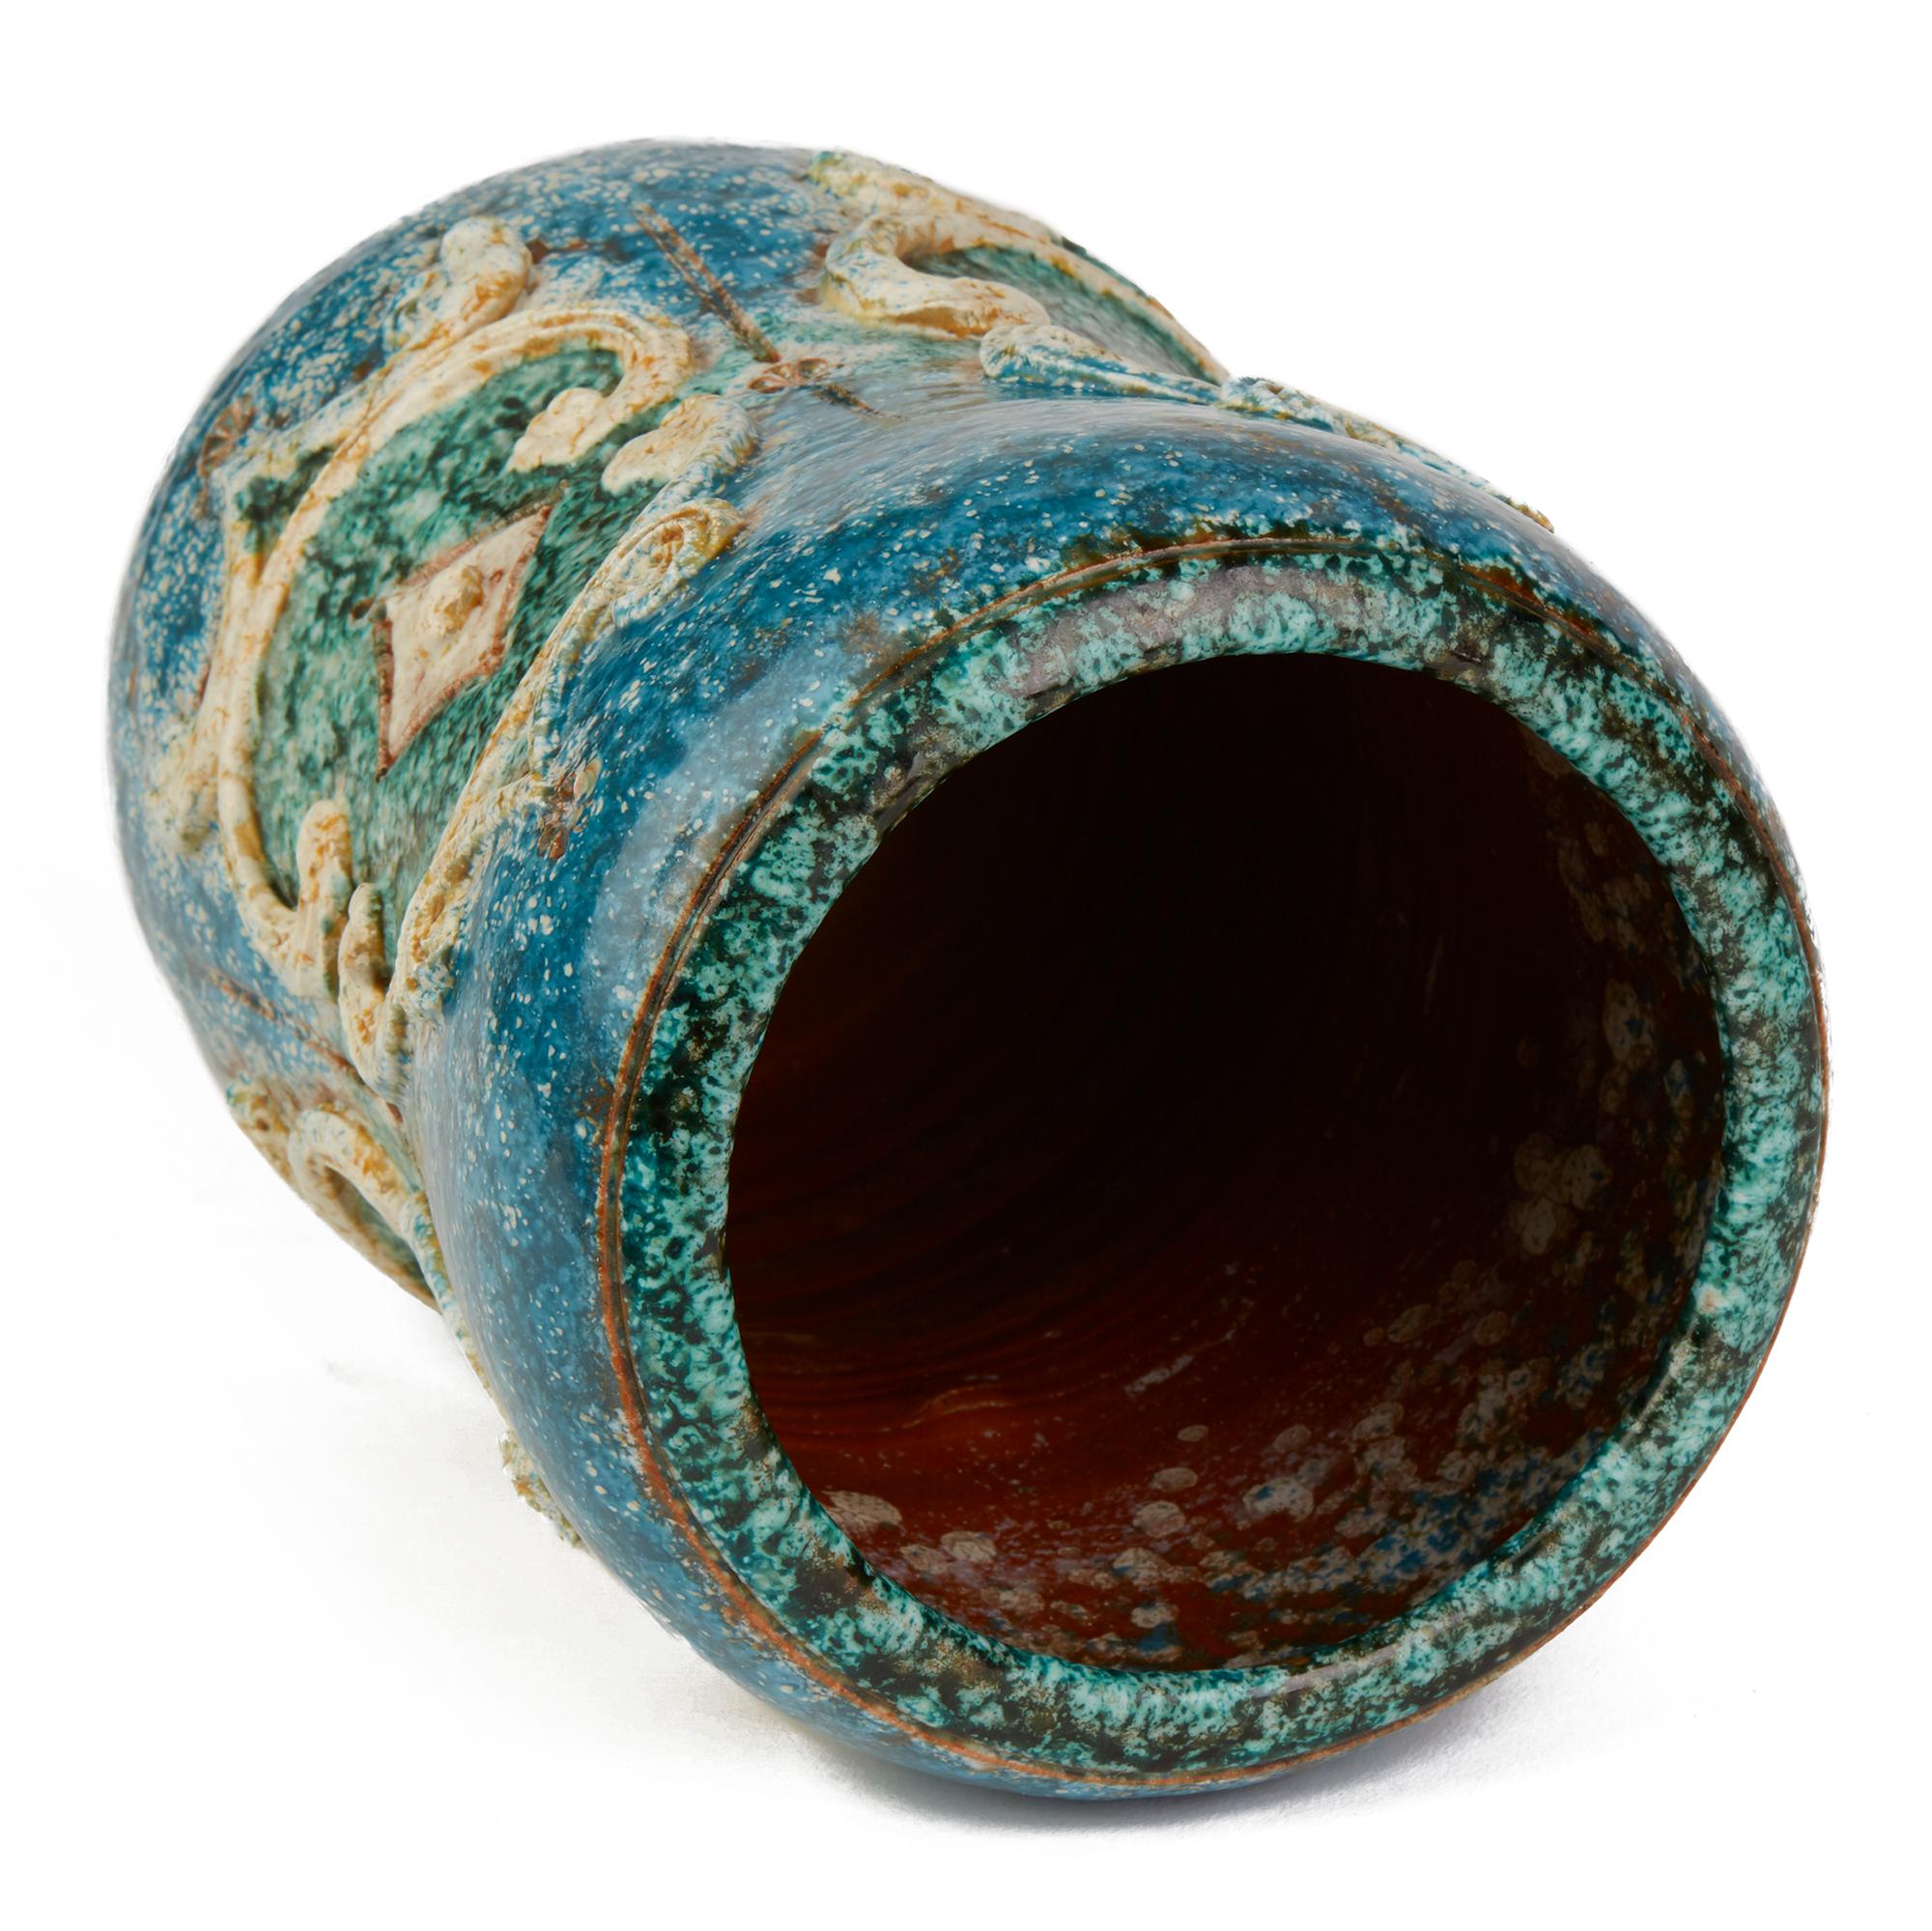 Eine sehr ungewöhnliche und stilvolle Vintage-Vase aus italienischer Keramik, die Alvino Bagni zugeschrieben wird und wahrscheinlich von Raymor hergestellt wurde. Die taillierte, runde, bauchige Vase ist mit erhabenen Mustern mit eingeschnittenen